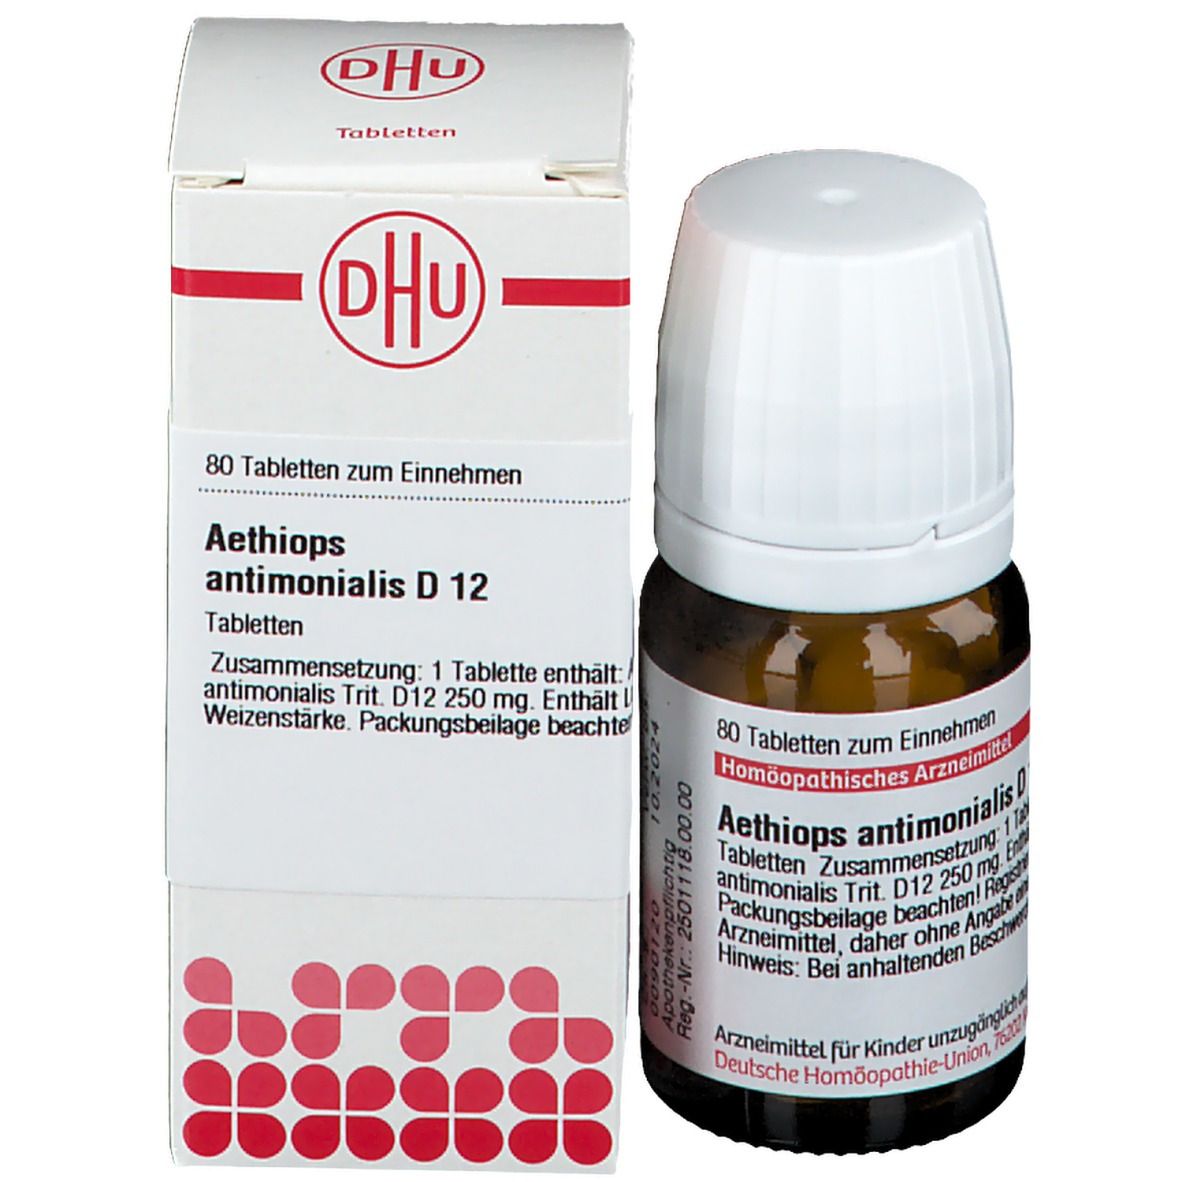 DHU Aethiops Anitmonialis D12